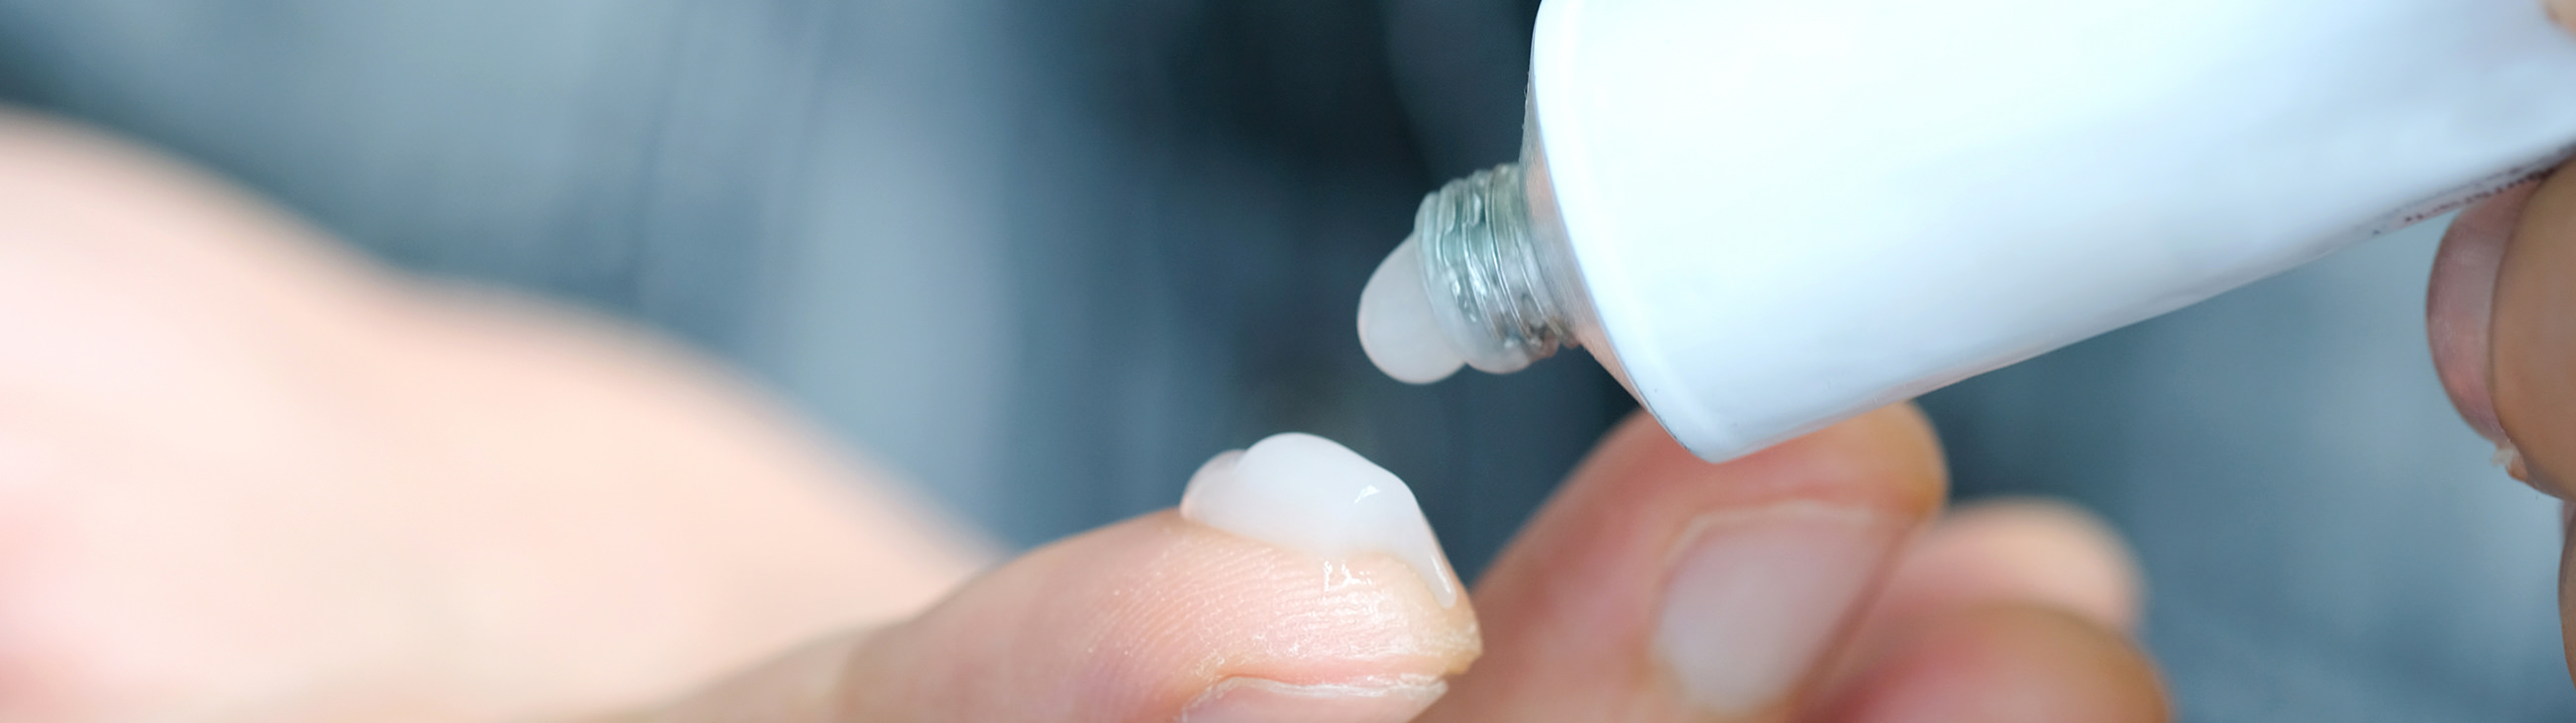 Come applicare la crema al cortisone per curare l'eczema?